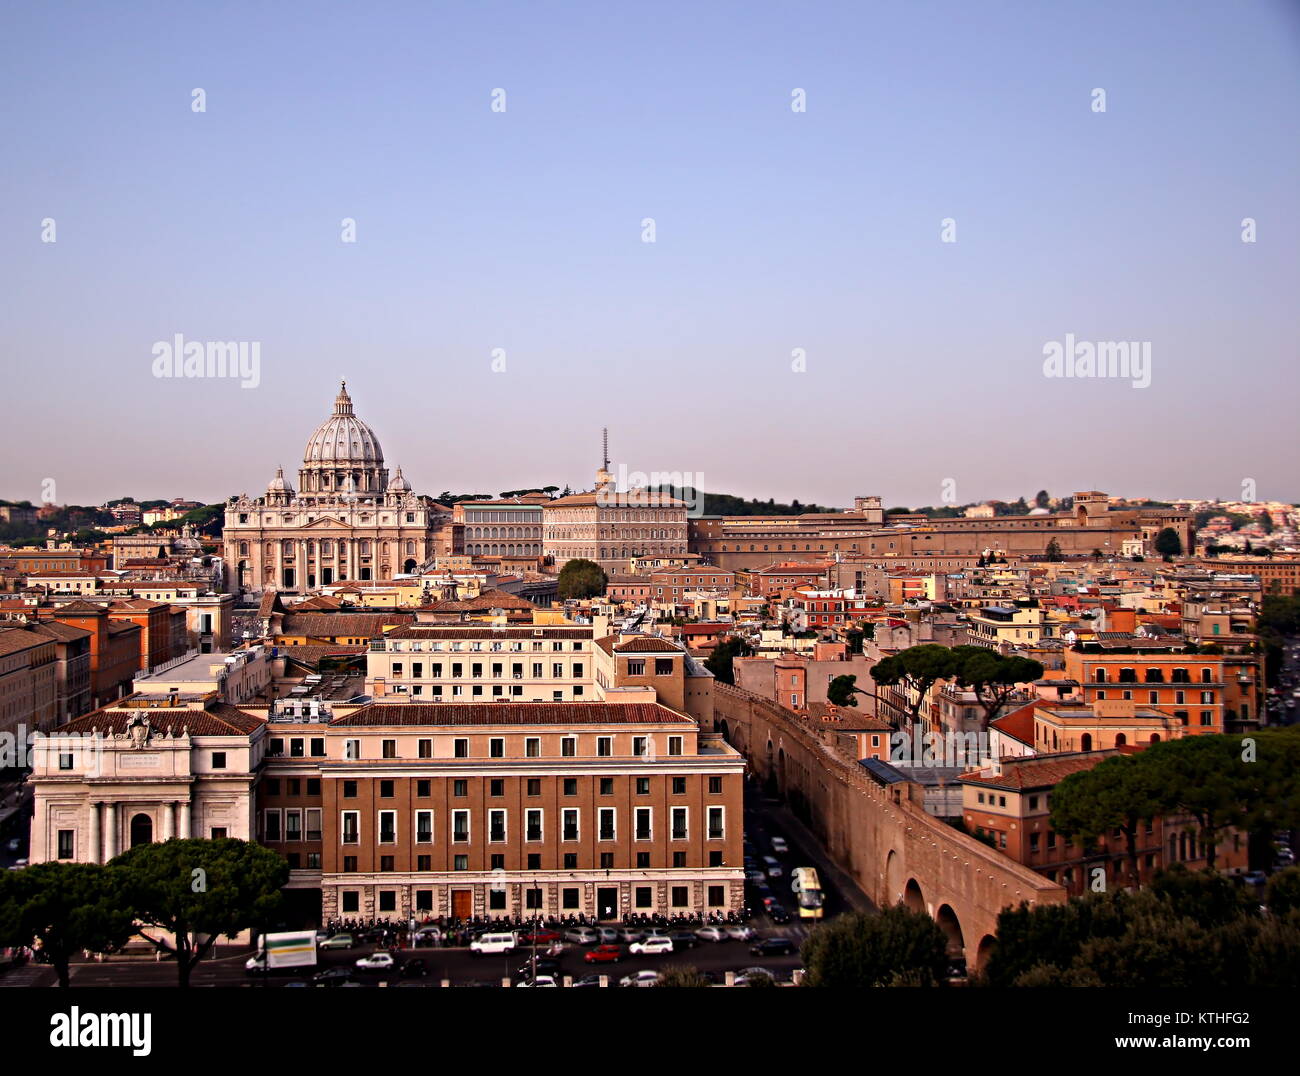 Vue panoramique de la Cité du Vatican, Rome, avec la Basilique Papale de Saint Pierre au Vatican (St. La Basilique Saint-Pierre), sur l'arrière-plan. Banque D'Images